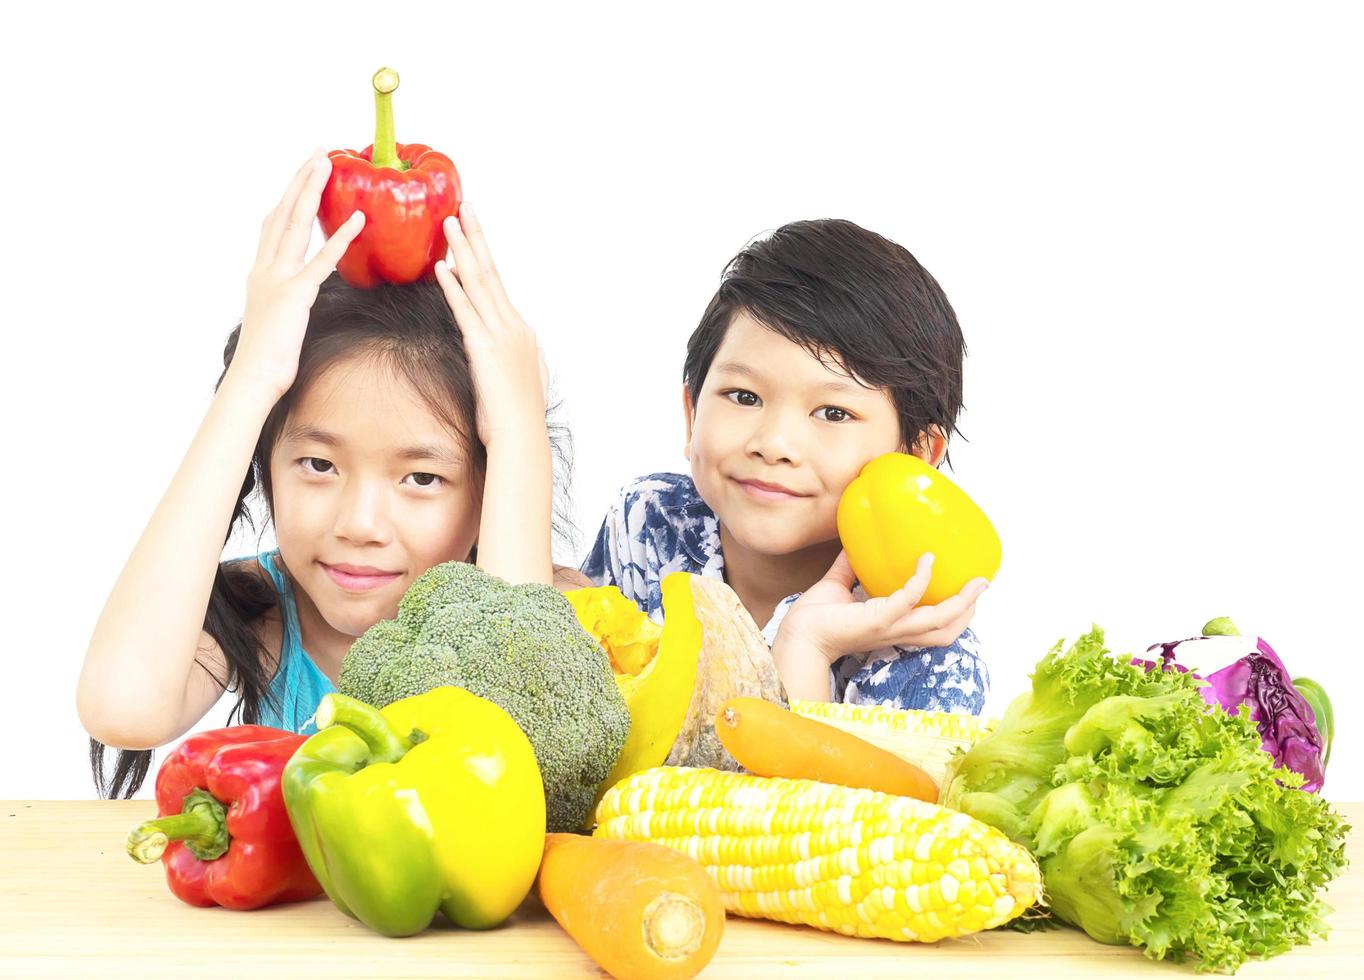 garçon et fille asiatiques montrant profiter de l'expression avec des légumes frais colorés isolés sur fond blanc photo